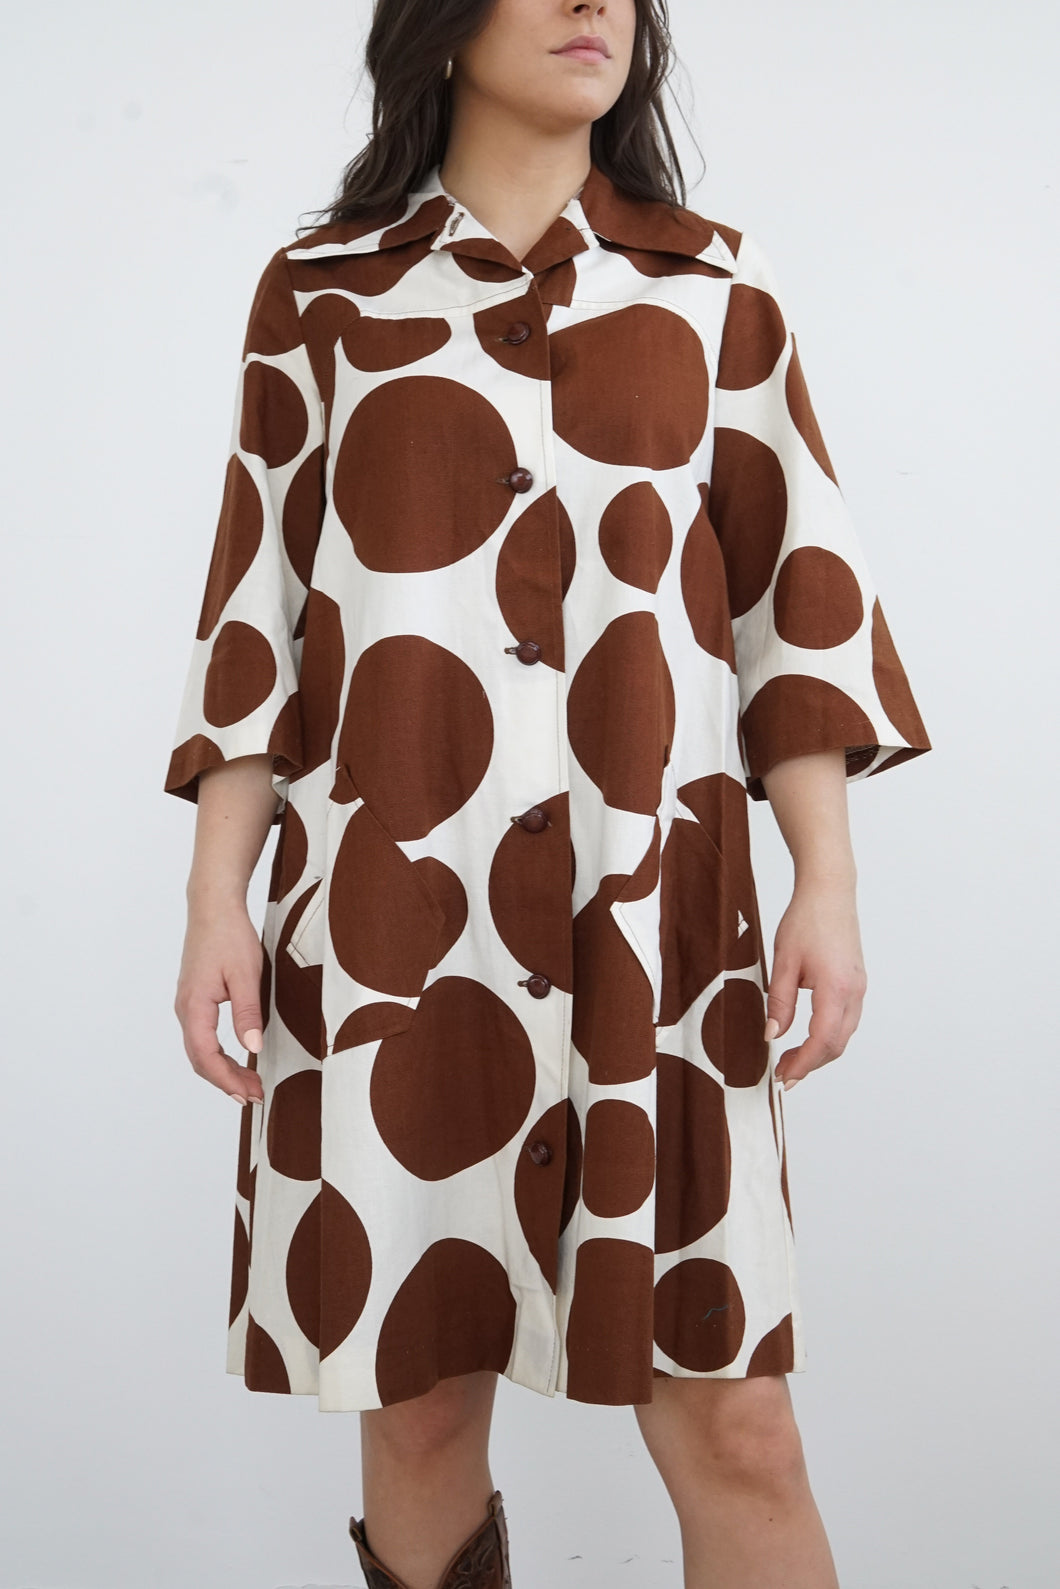 Robe vintage 70s designer Vanessa top qualité 100% coton taille 36 (S)